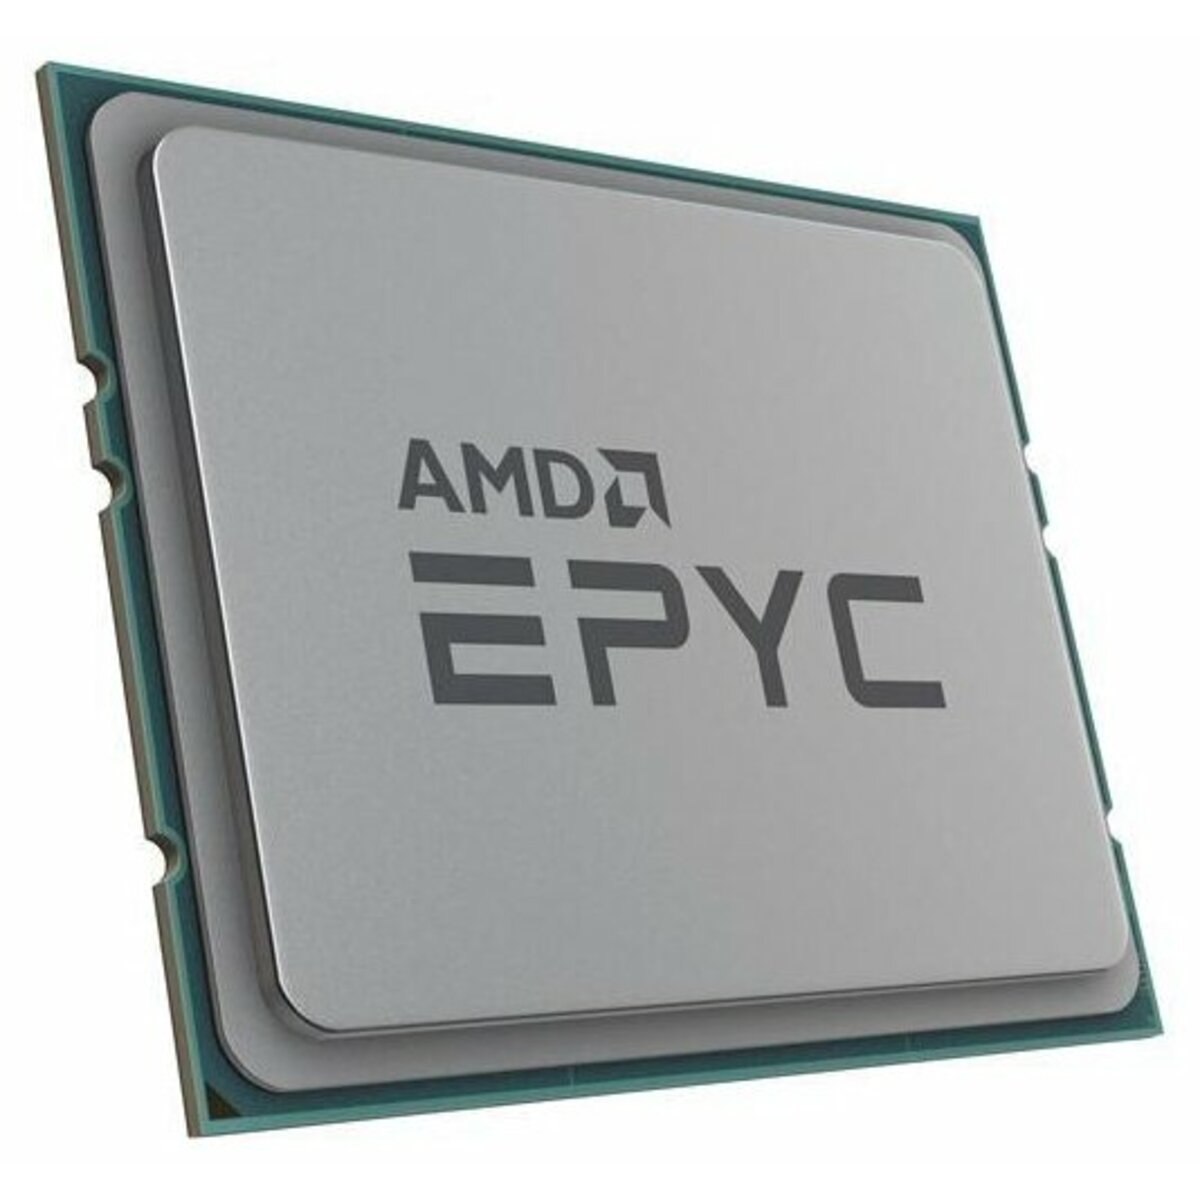 Процессор AMD Epyc 7543 OEM